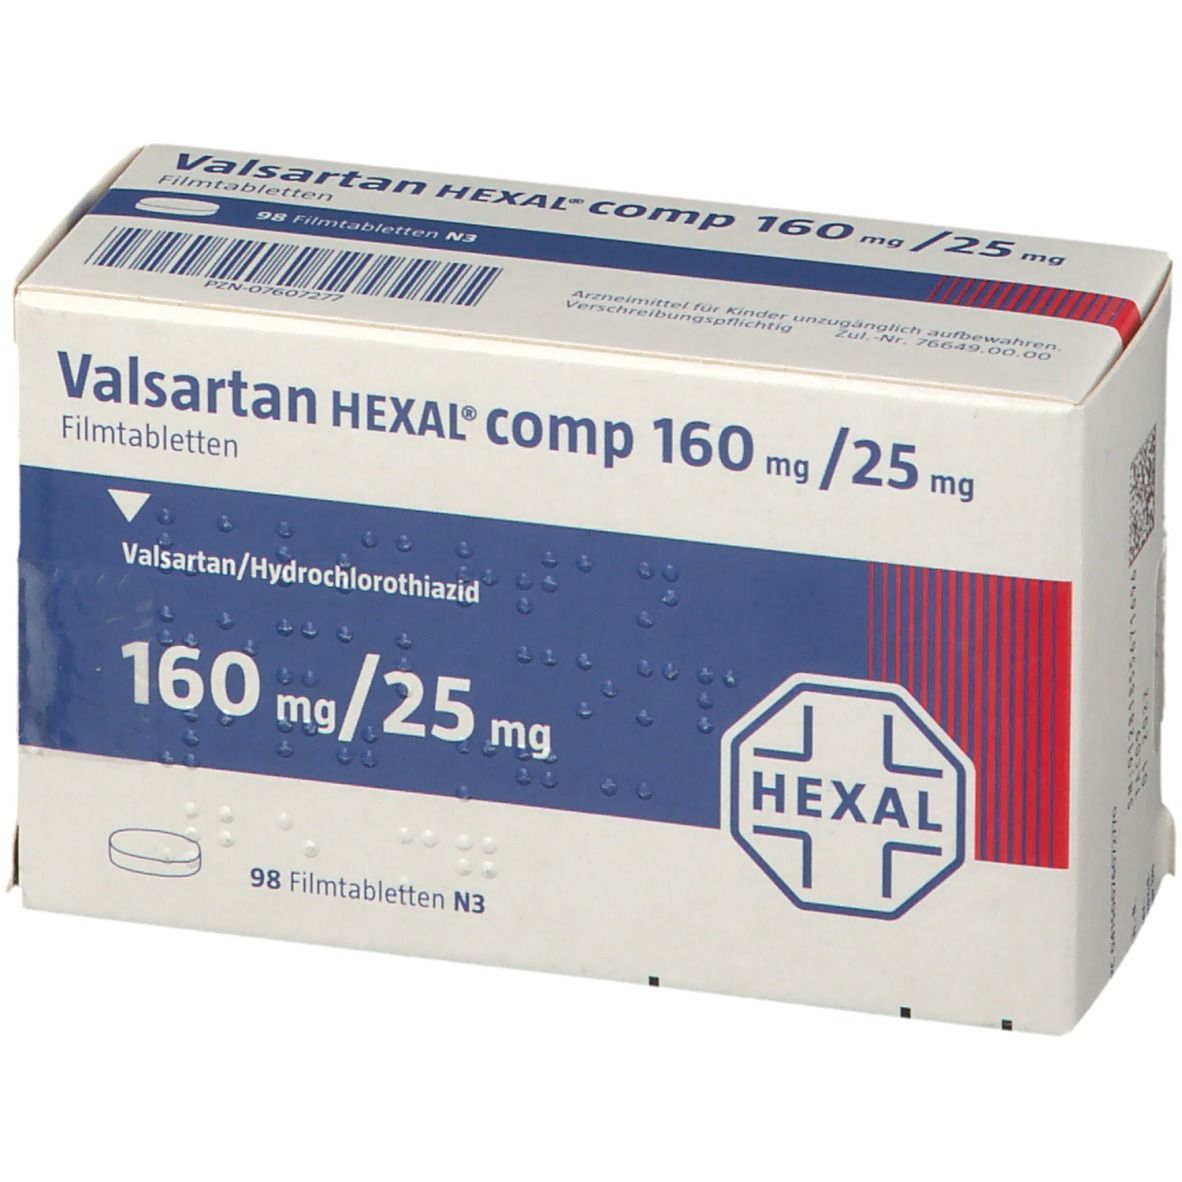 Valsartan HEXAL® comp 160 mg/25 mg